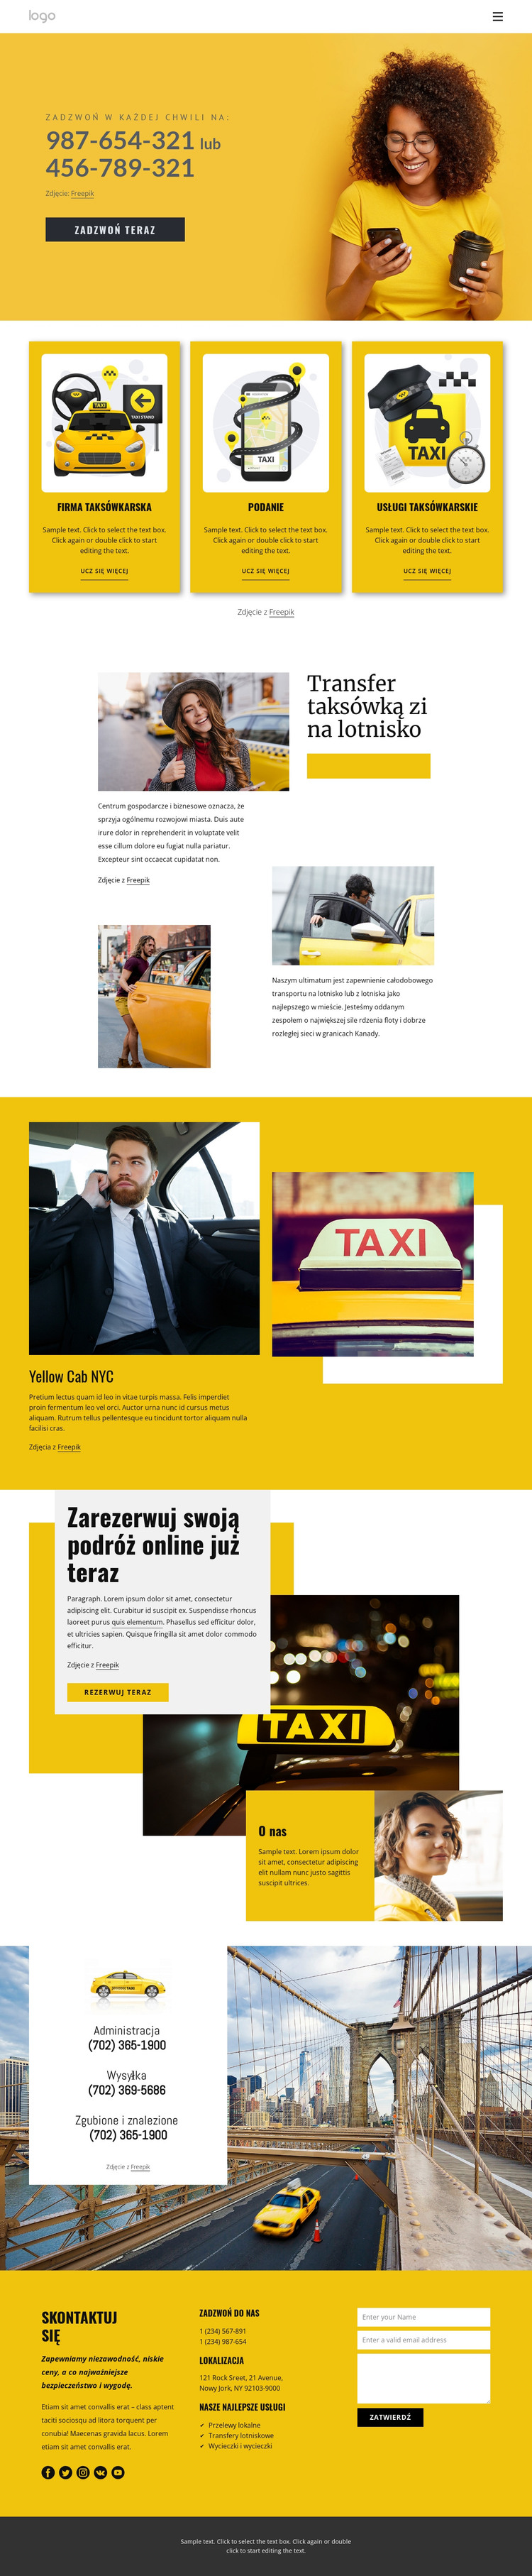 Jakość usług taksówkowych Szablon HTML